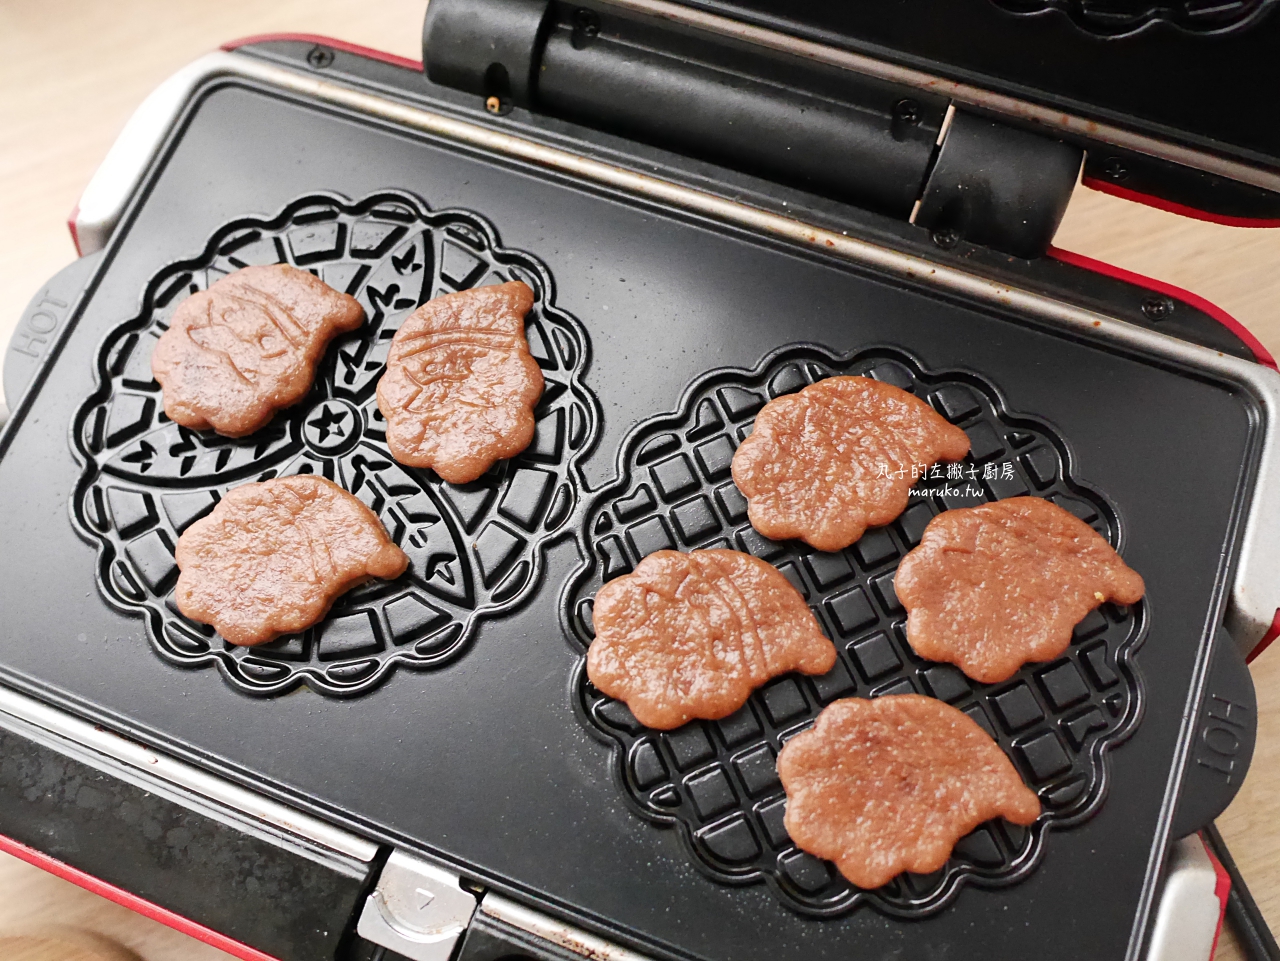 【食譜】焦糖夾心餅乾 烤餅乾只要3分鐘 小V鬆餅機 蕾絲烤盤分享